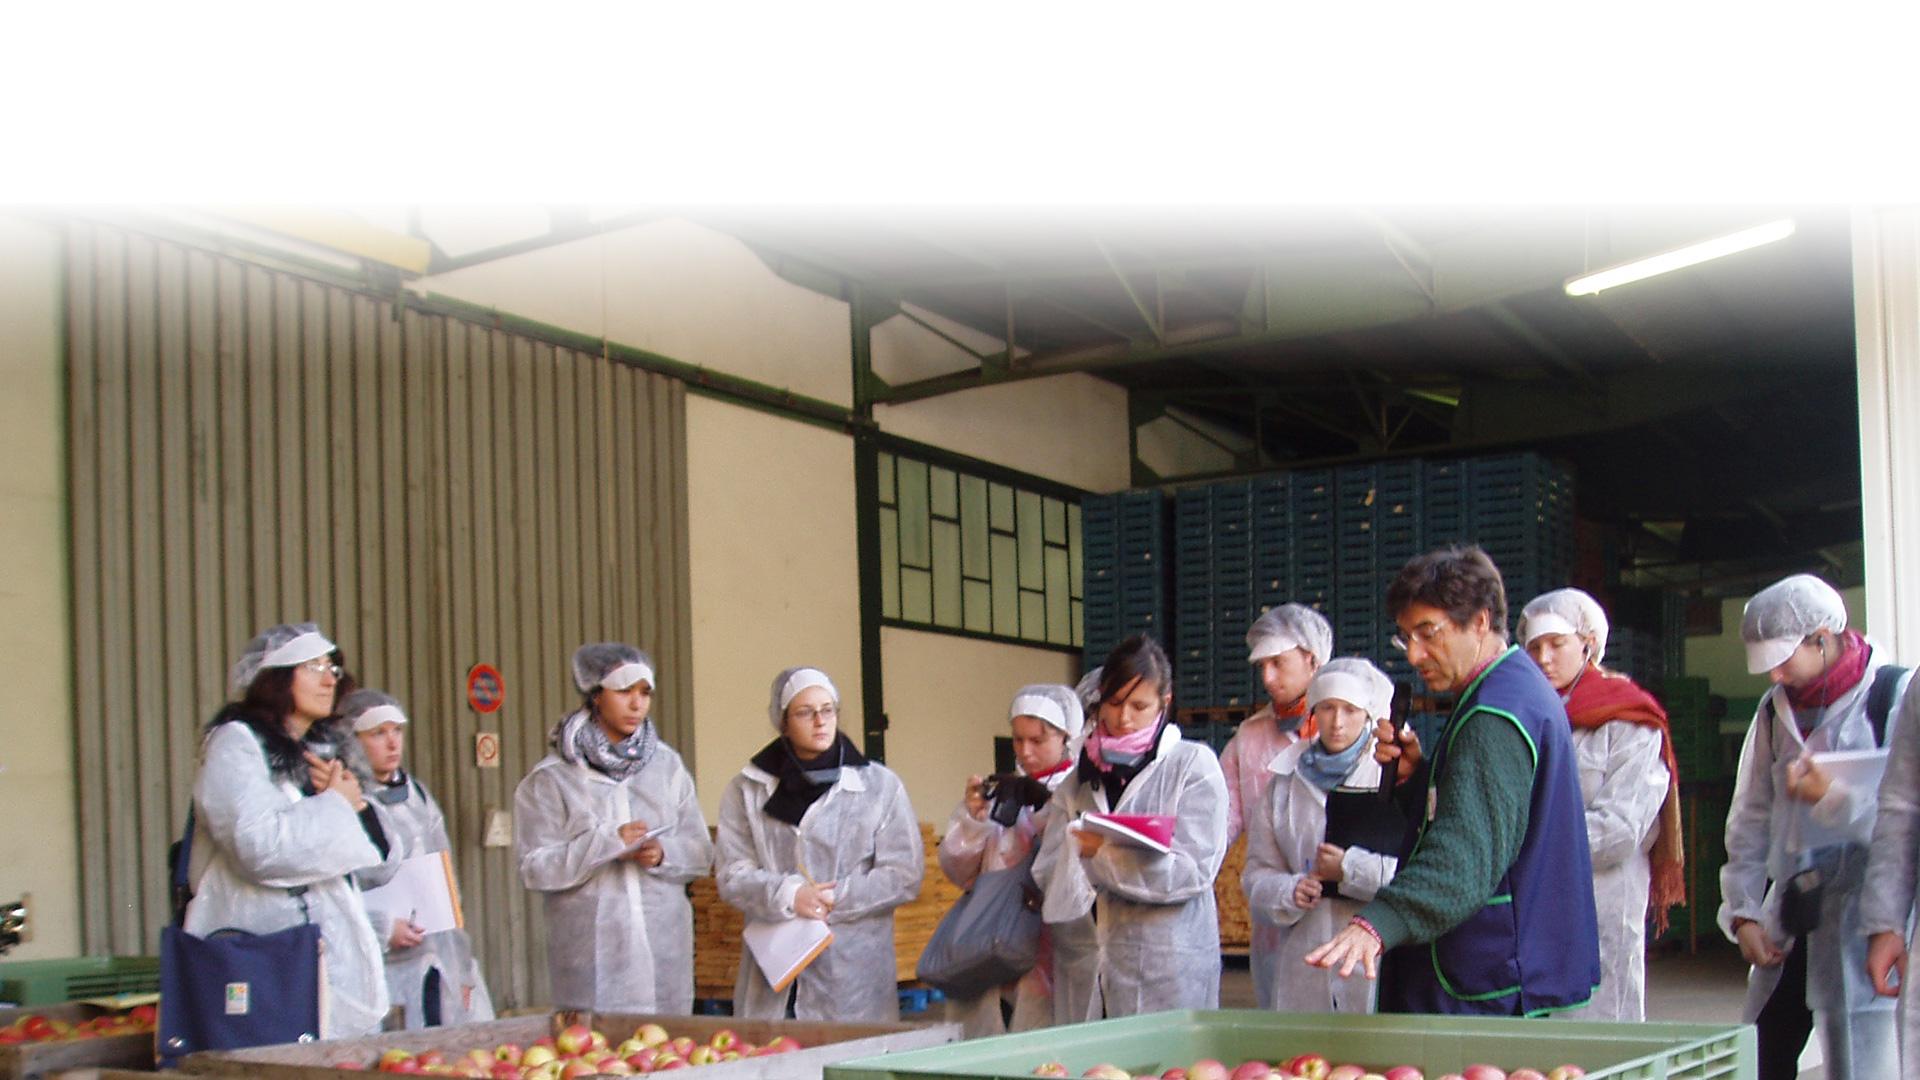 Etudiants en stage dans une entreprise agroalimentaire